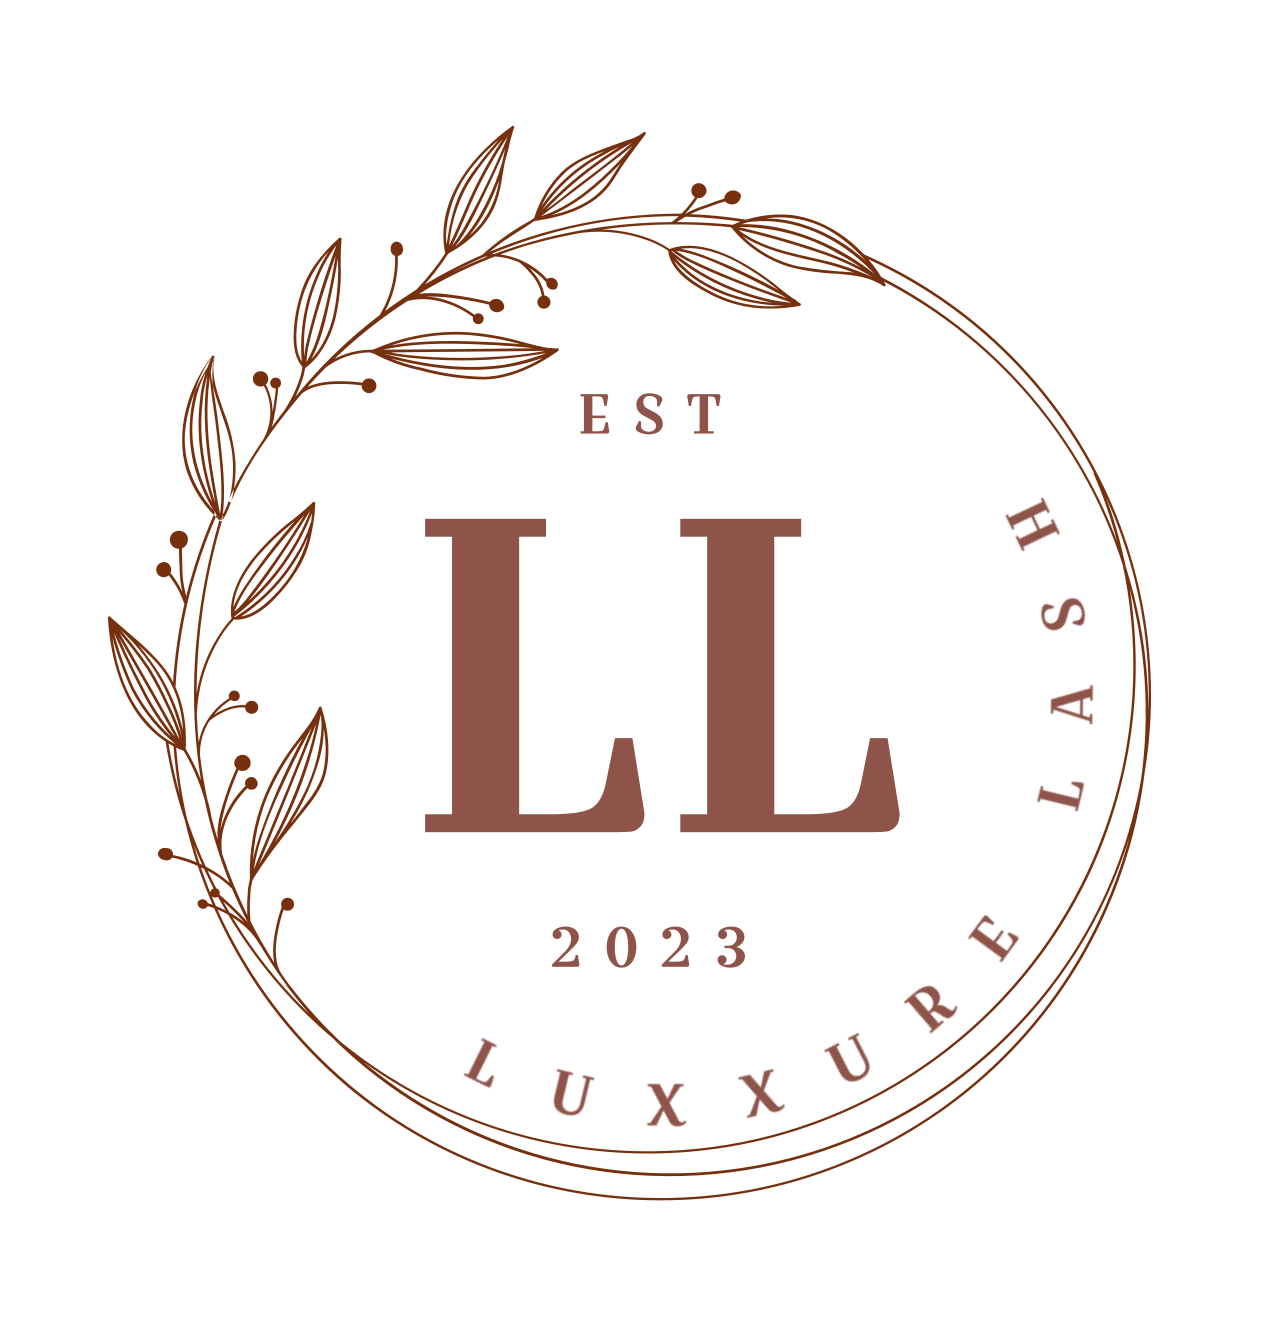 Luxxure Lash's web page